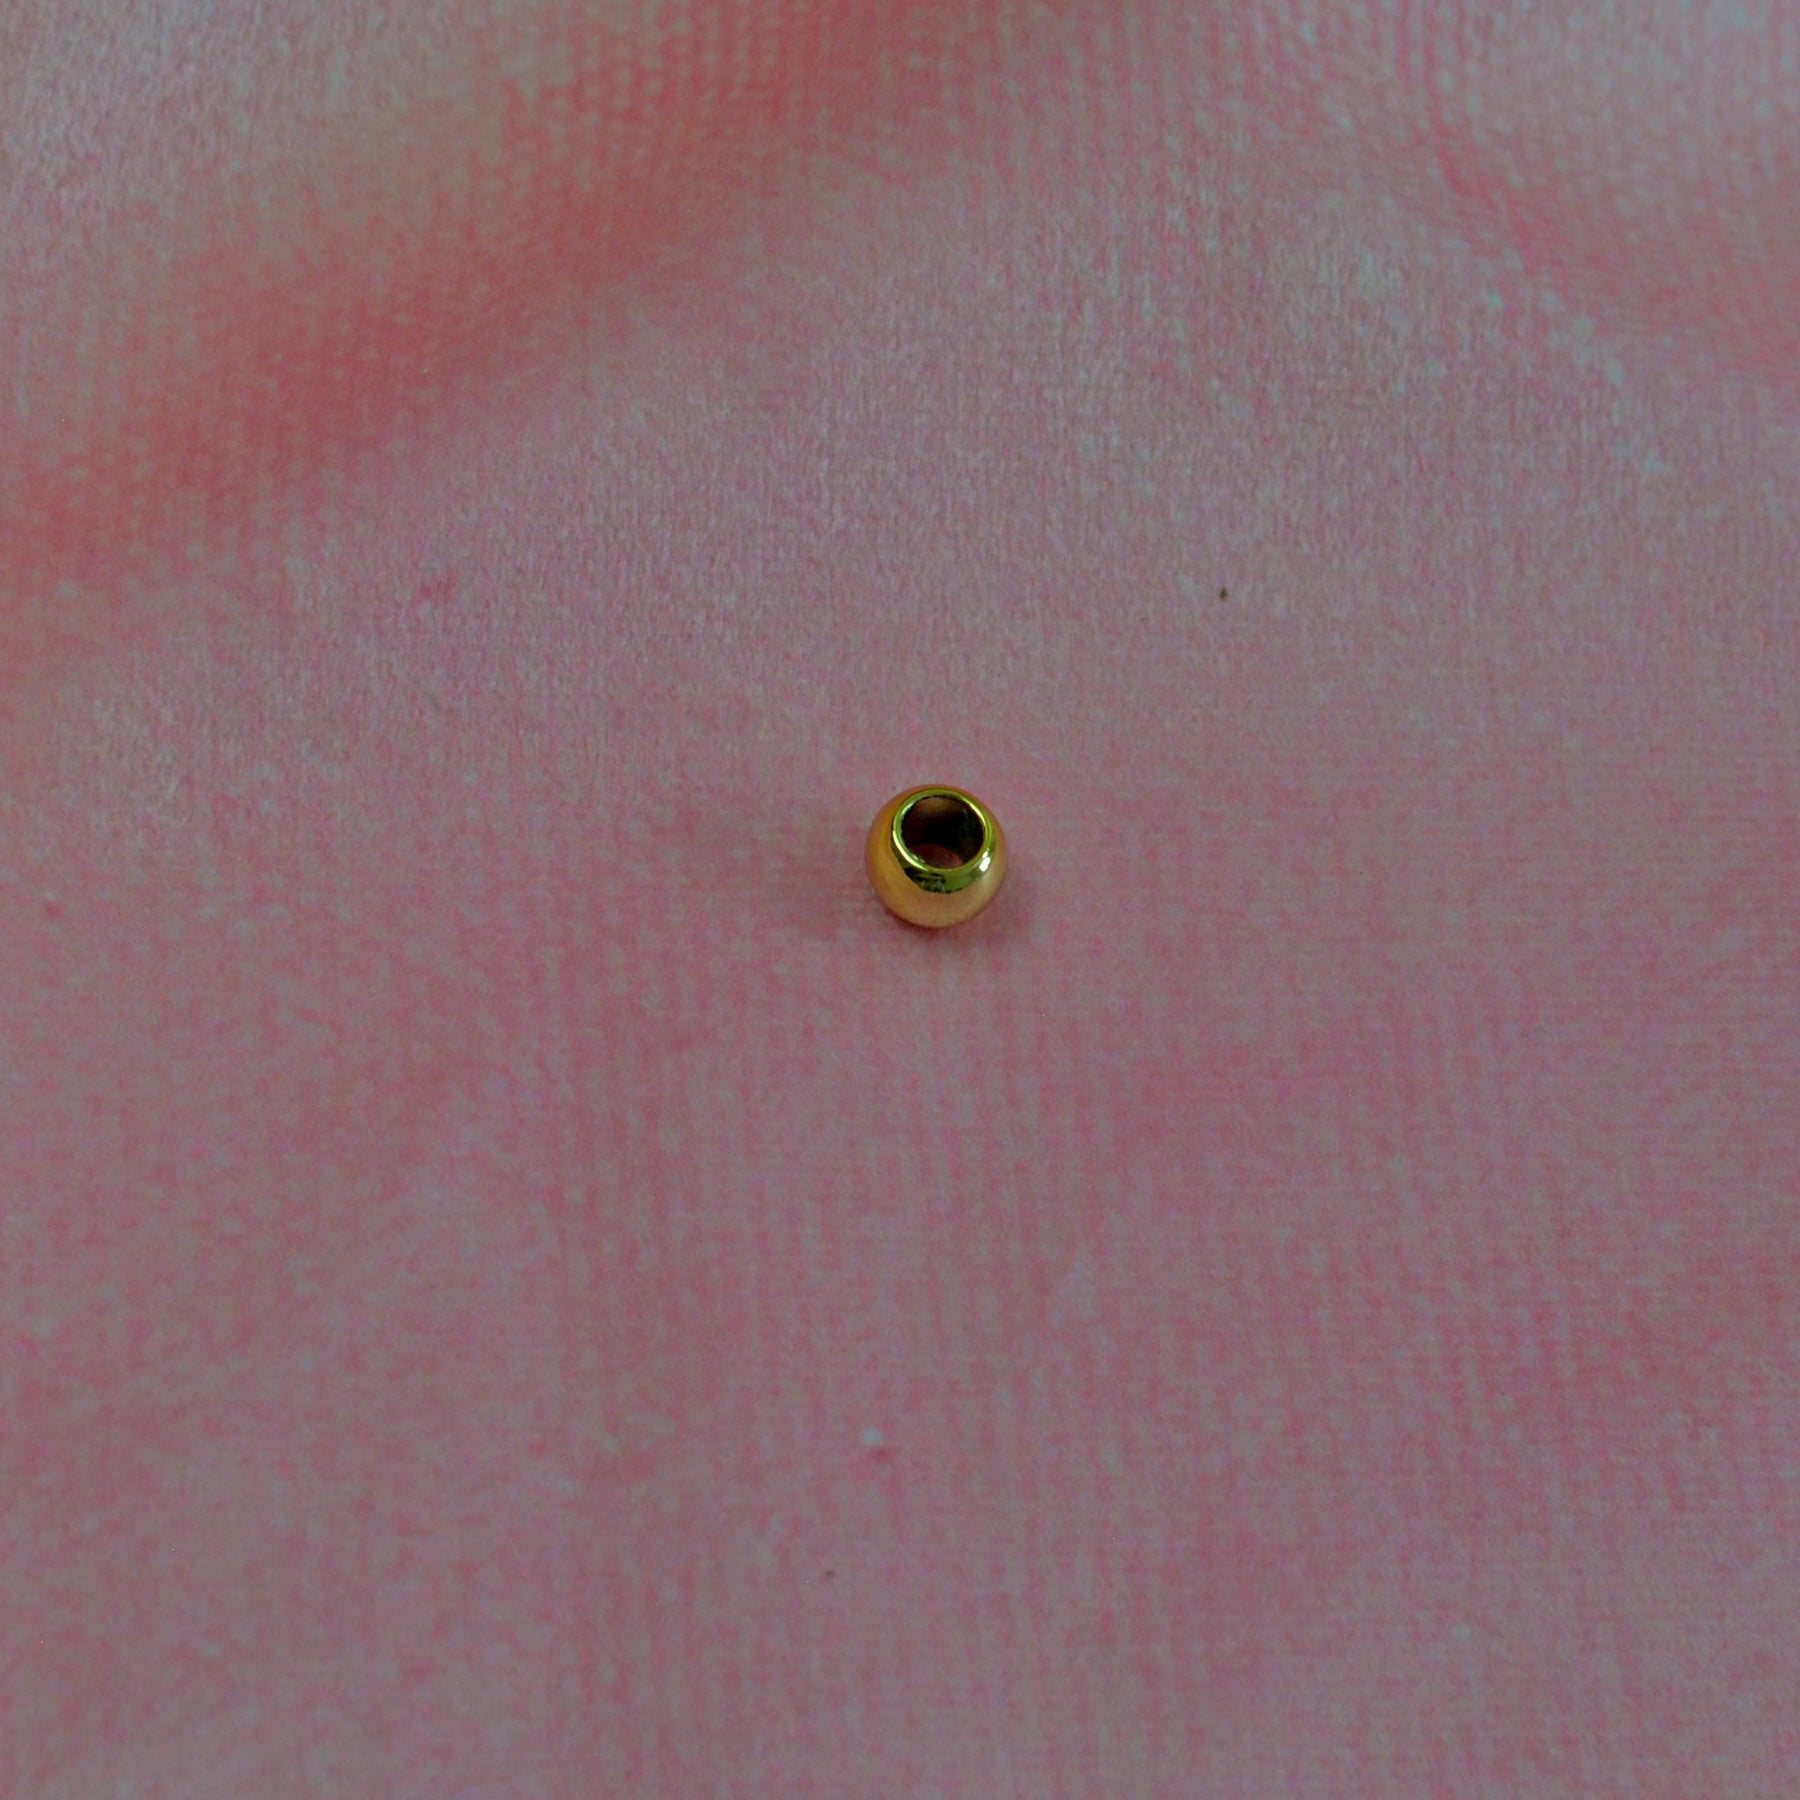 Großlochperlen 8x10 mm metallic Gold Pearls poshpinks